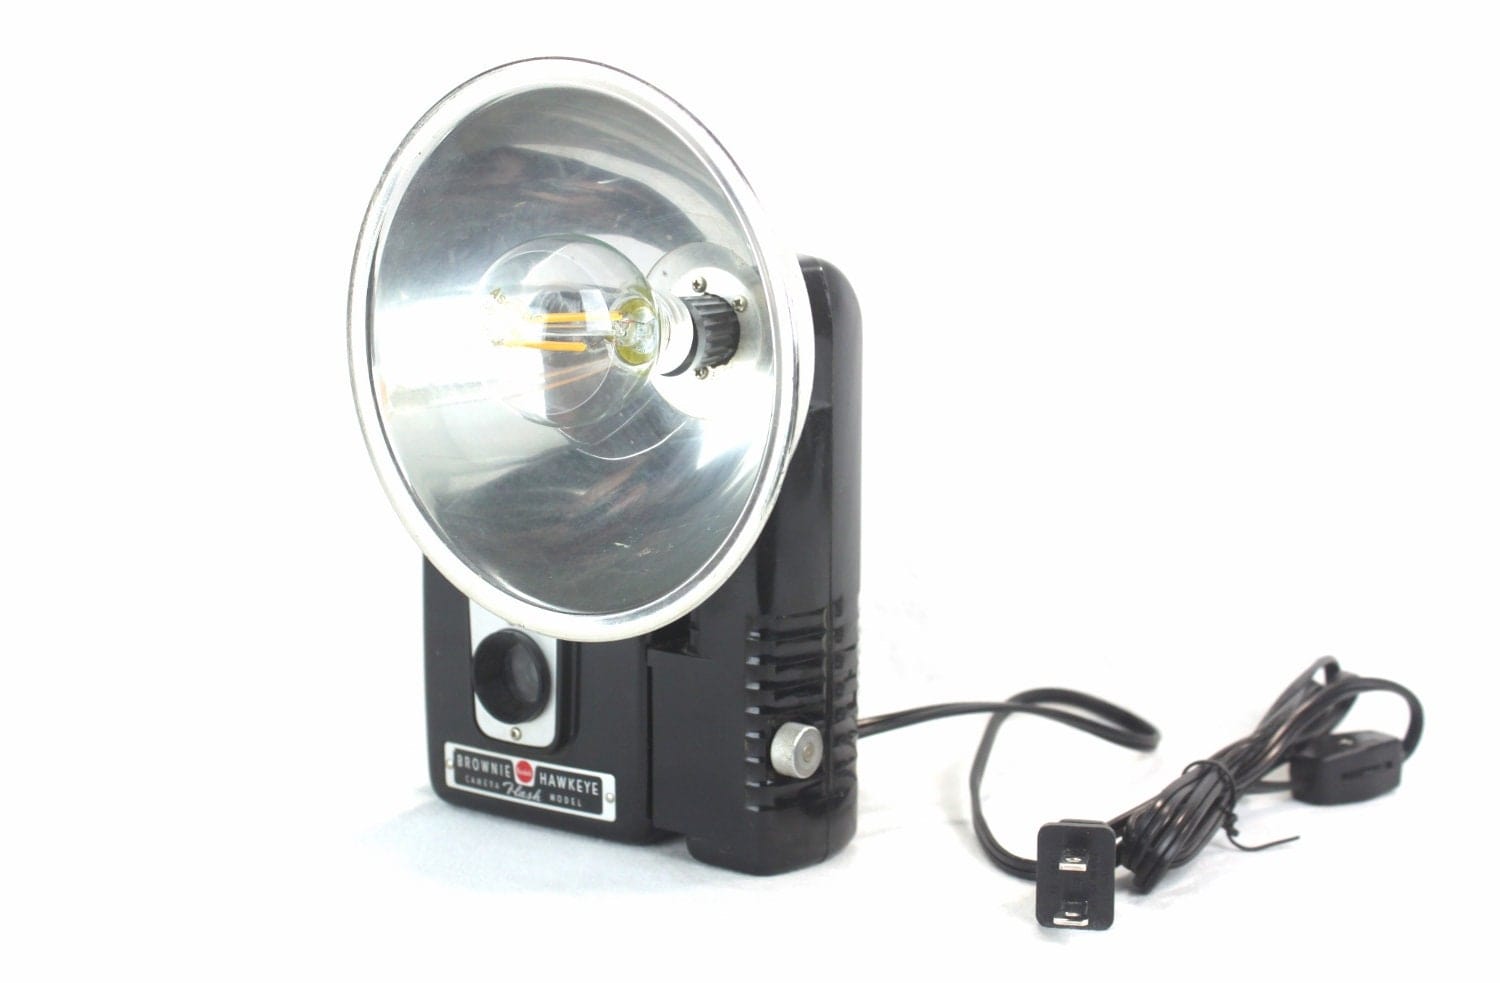 LightAndTimeArt Camera Lamp Vintage LED Reading Lamp - Task Lamp  - Kodak Brownie Hawkeye Flash Vintage Camera